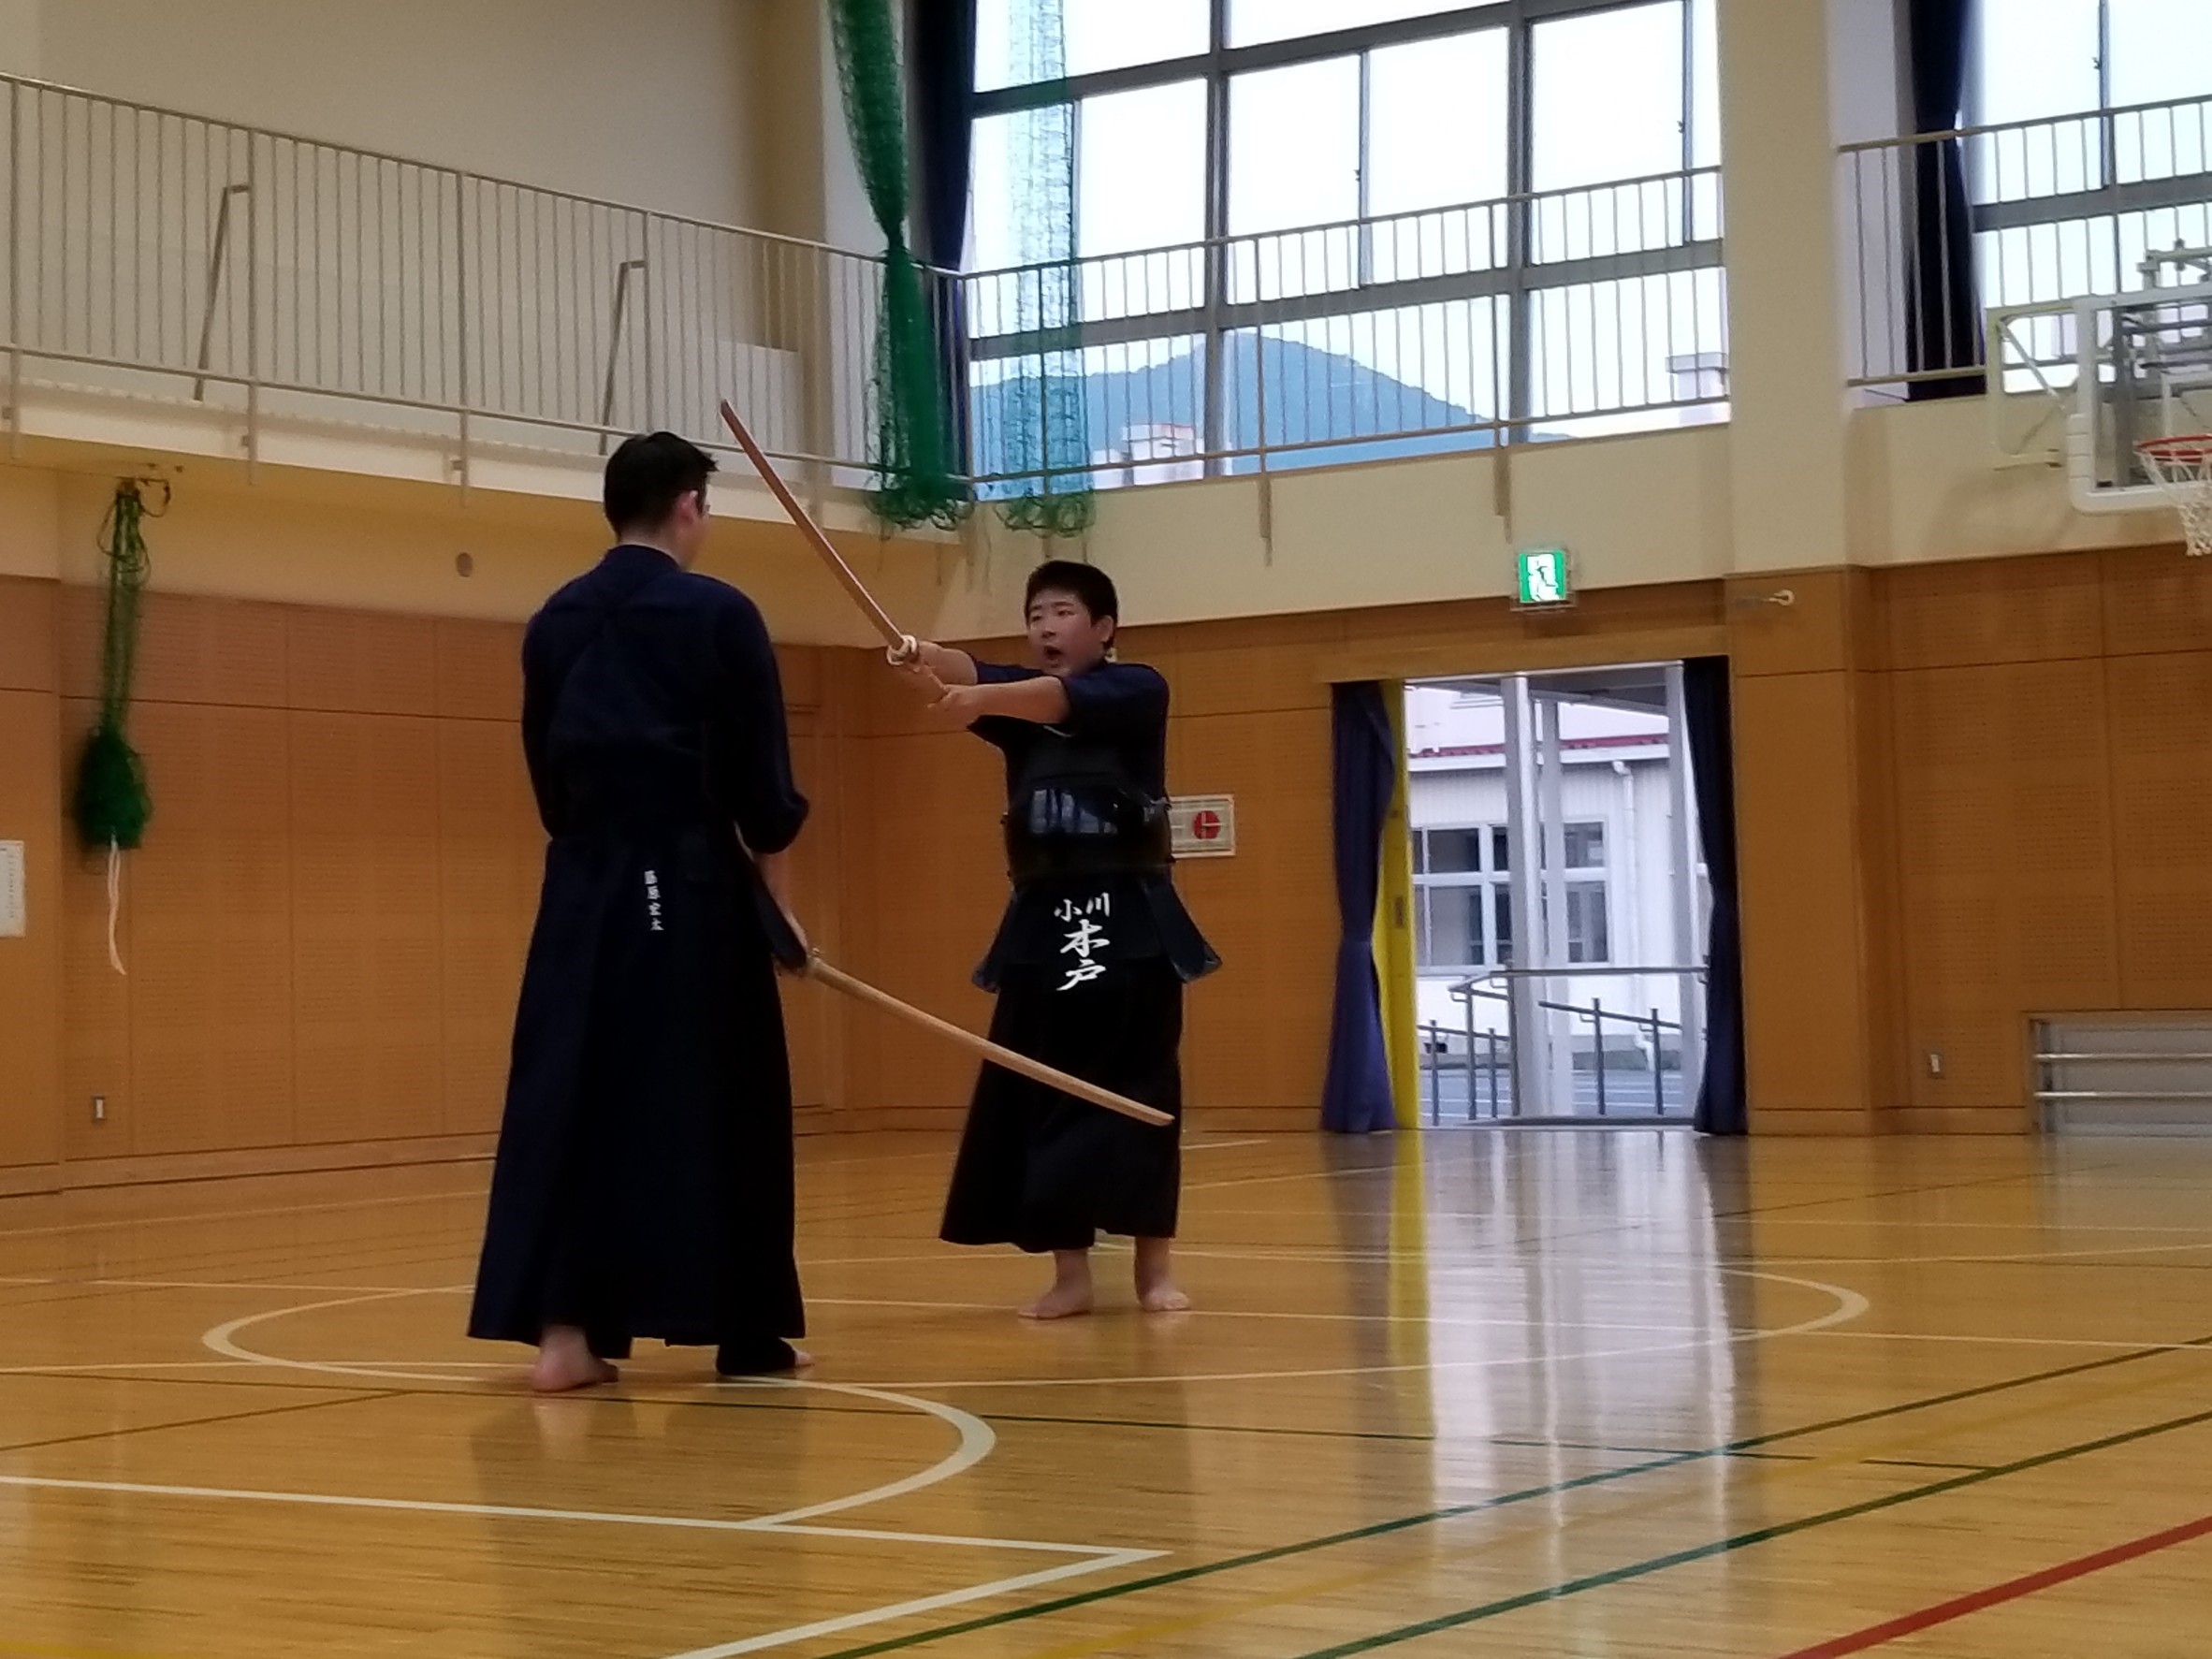 日本 剣道 形 1 本目 日本剣道形 一本目